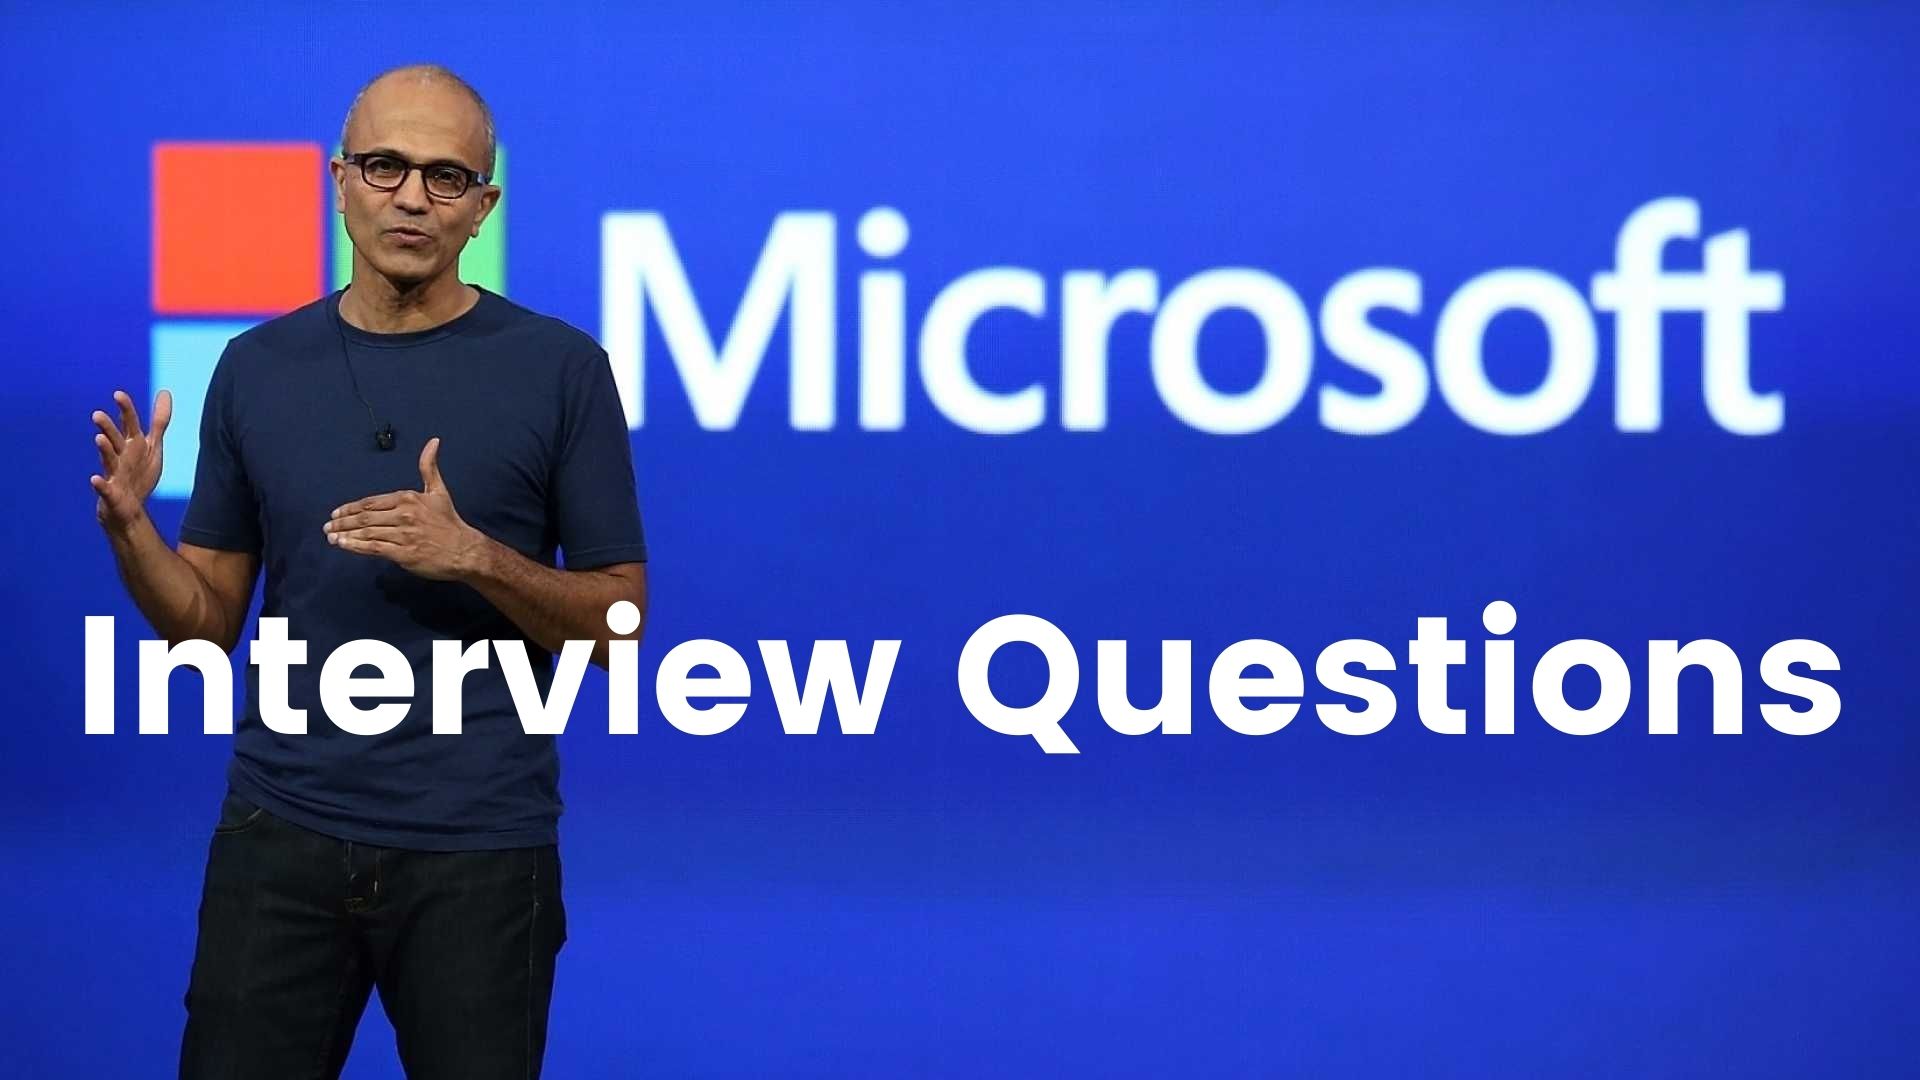 vprašanja za intervju za Microsoft